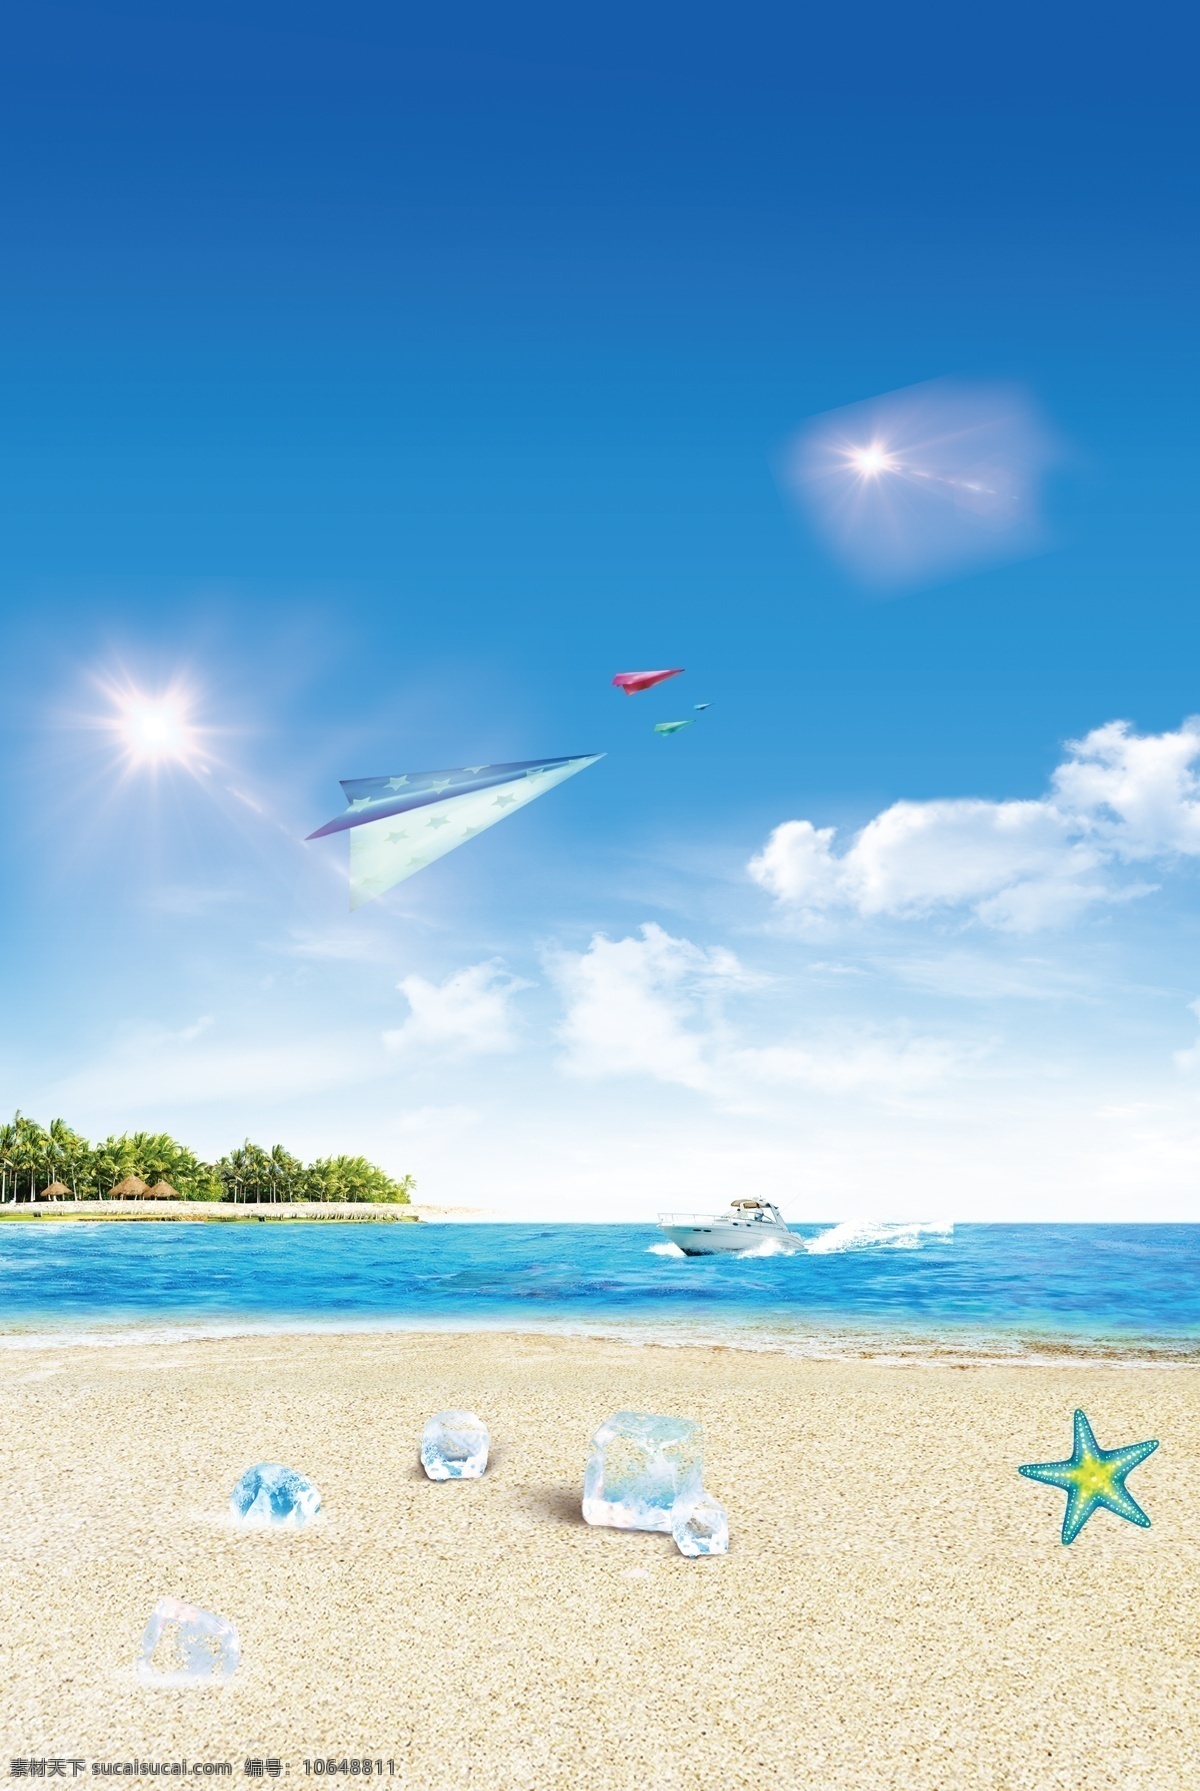 海边 沙滩 大海 树木 游艇 船 促销 夏令营 海水 海浪 深蓝色 天空 云朵 海边沙滩 分层 飞机 纸飞机 亮光 冰块 夏天 海星 自然景观 自然风光